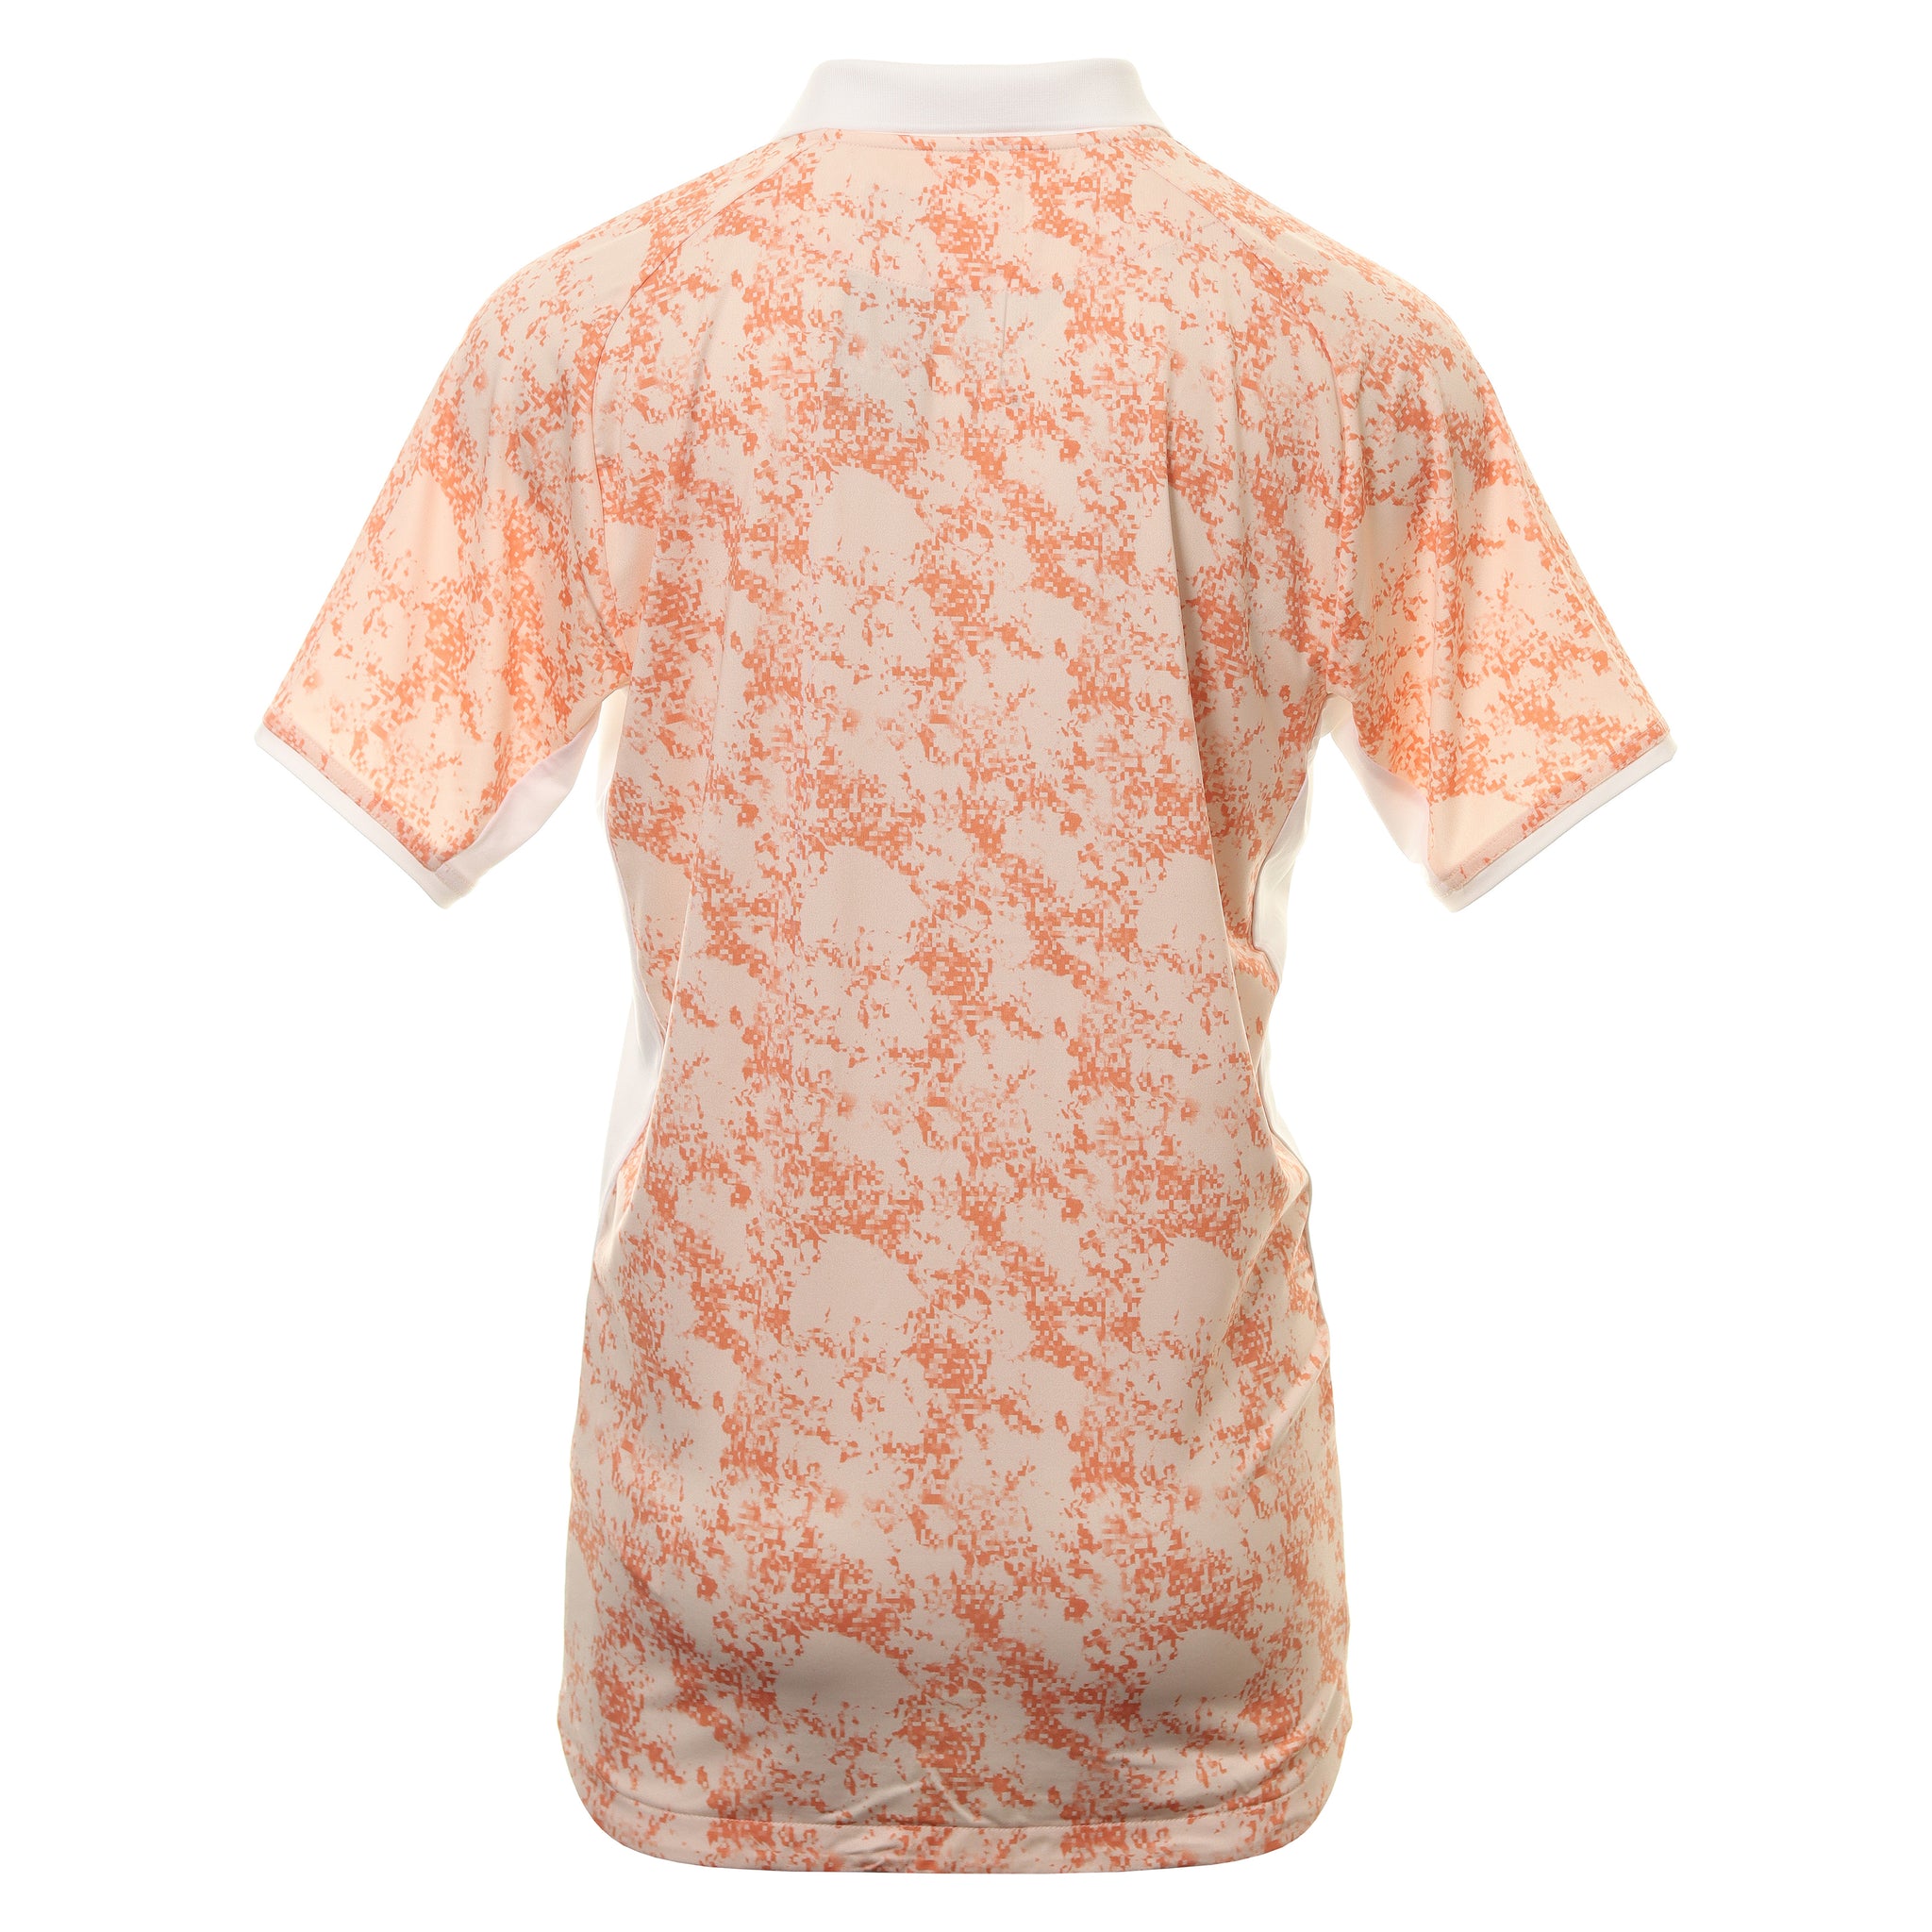 oakley-golf-sand-camo-raglan-shirt-404355-soft-orange-73k